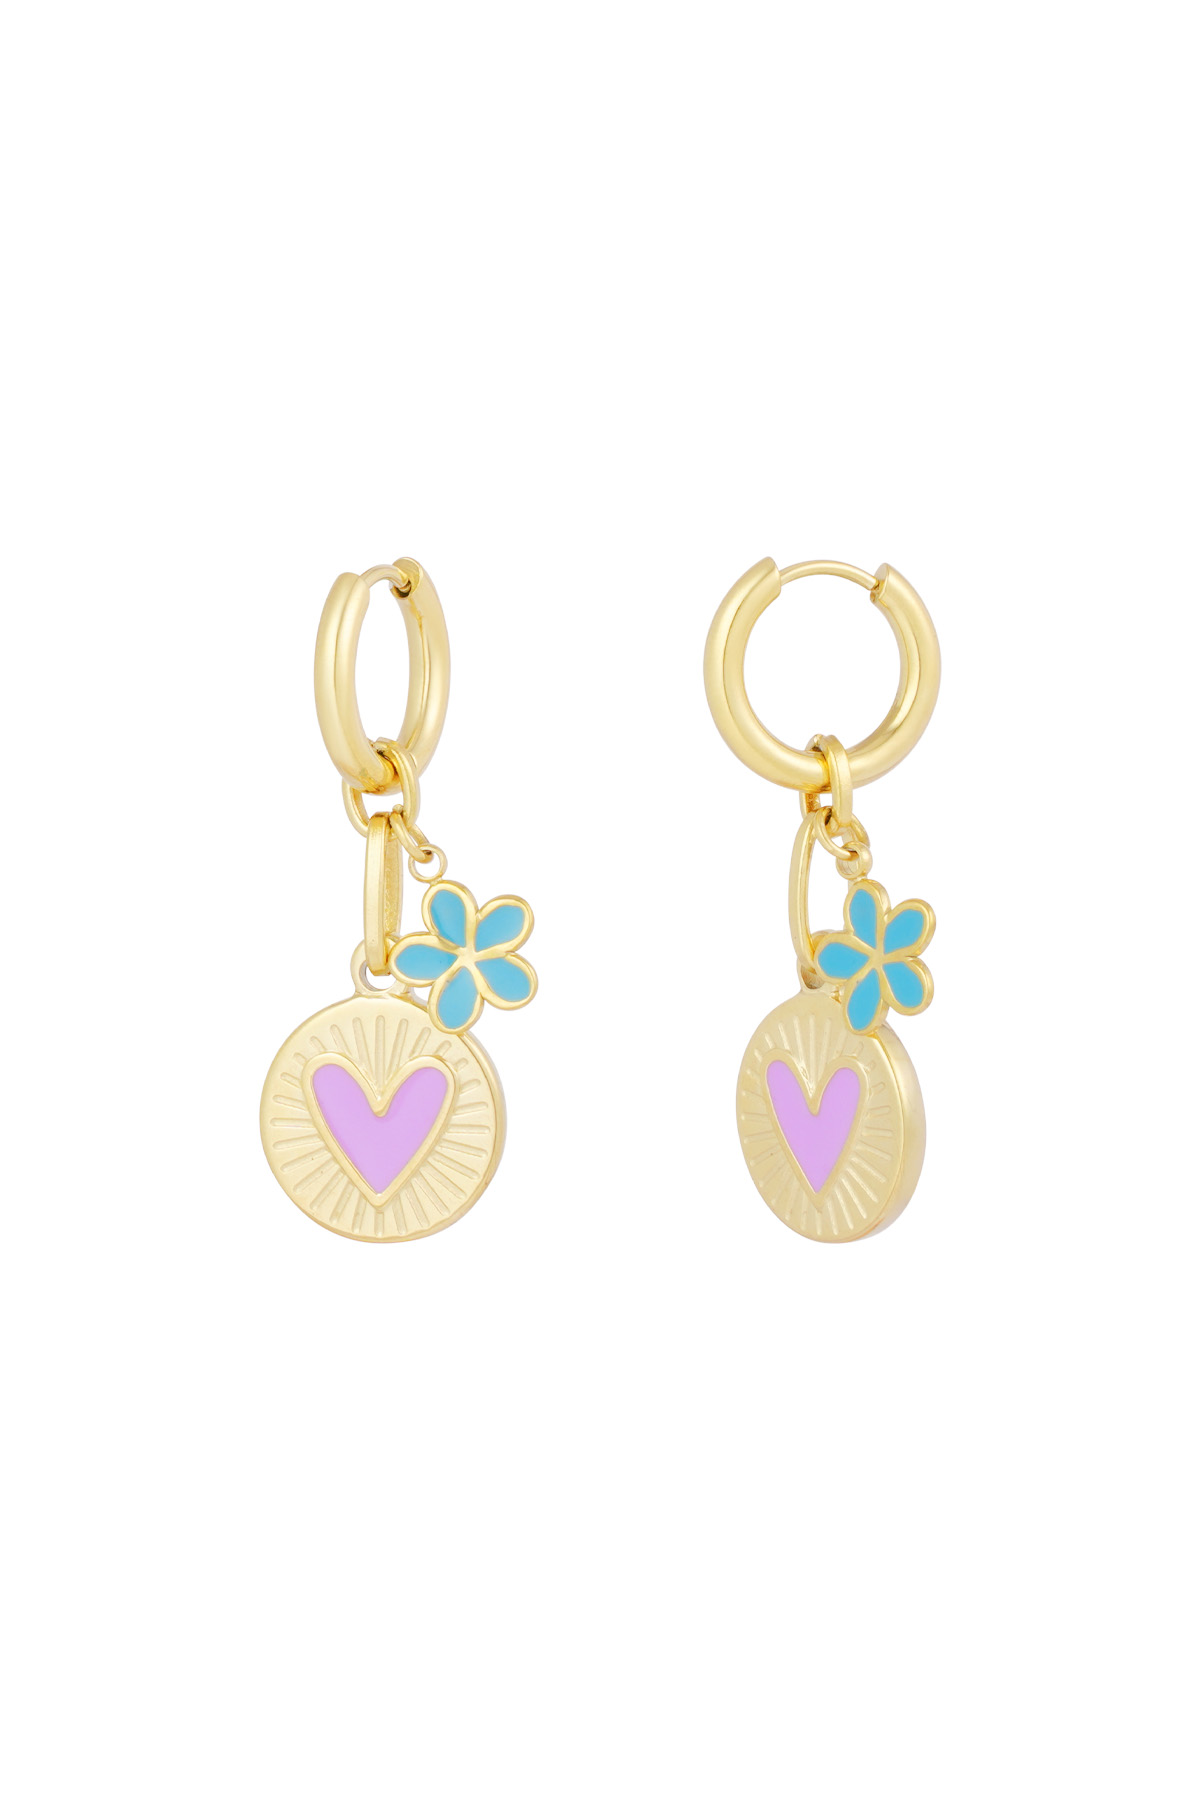 Flower love charm earrings - gold